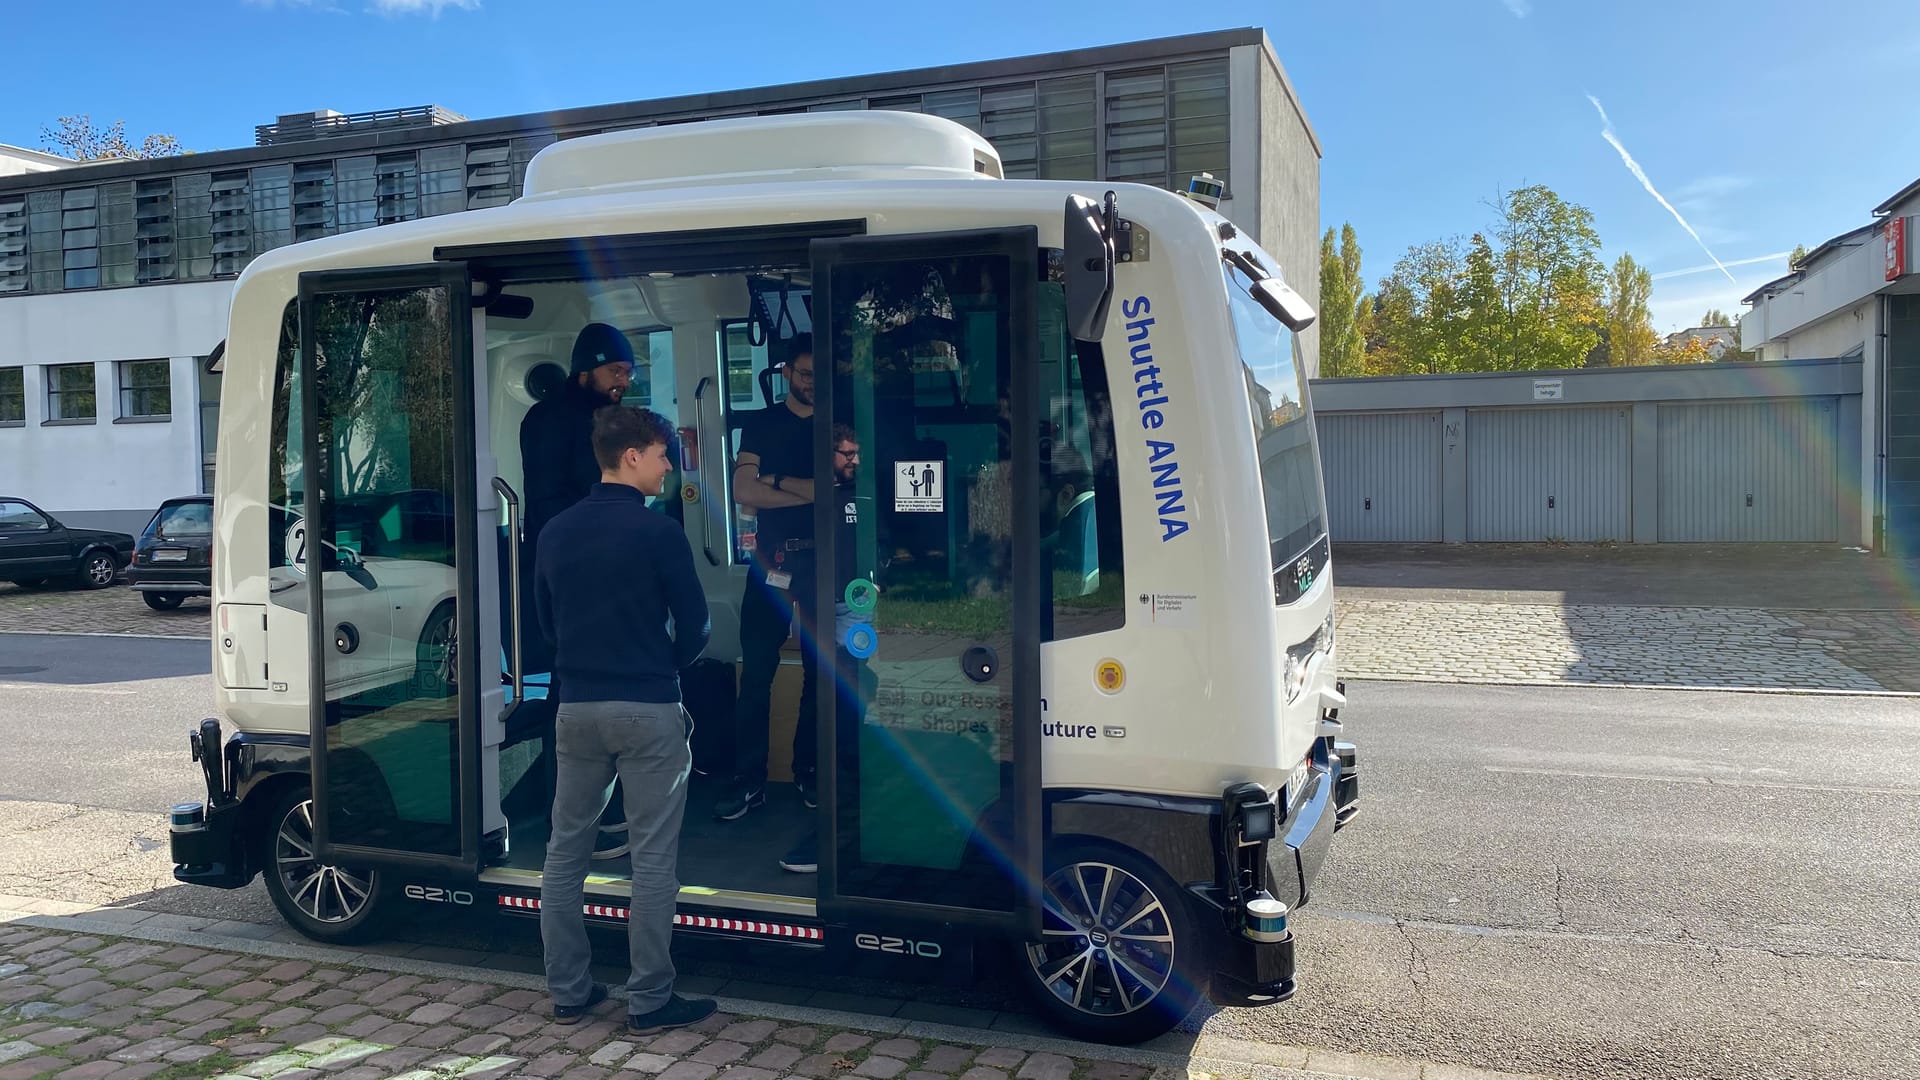 Autonomer Mini-Shuttlebus in Karlsruhe, Forscher stehen im Bus